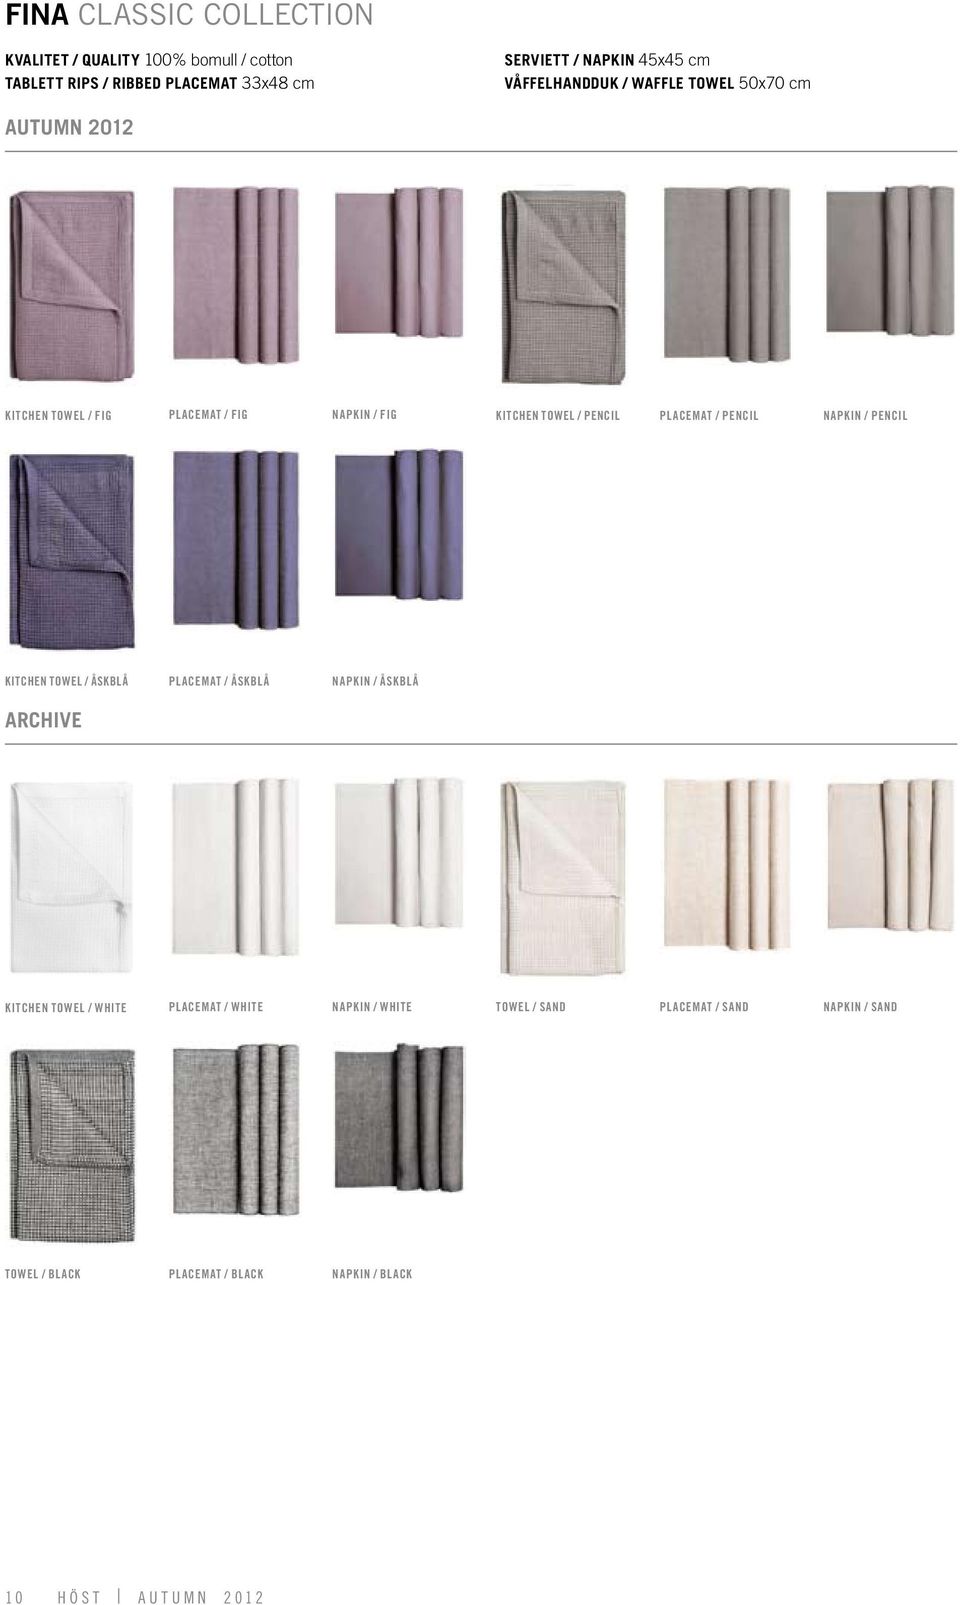 placemat / pencil napkin / pencil kitchen towel / åskblå placemat / åskblå napkin / åskblå kitchen towel / white placemat /